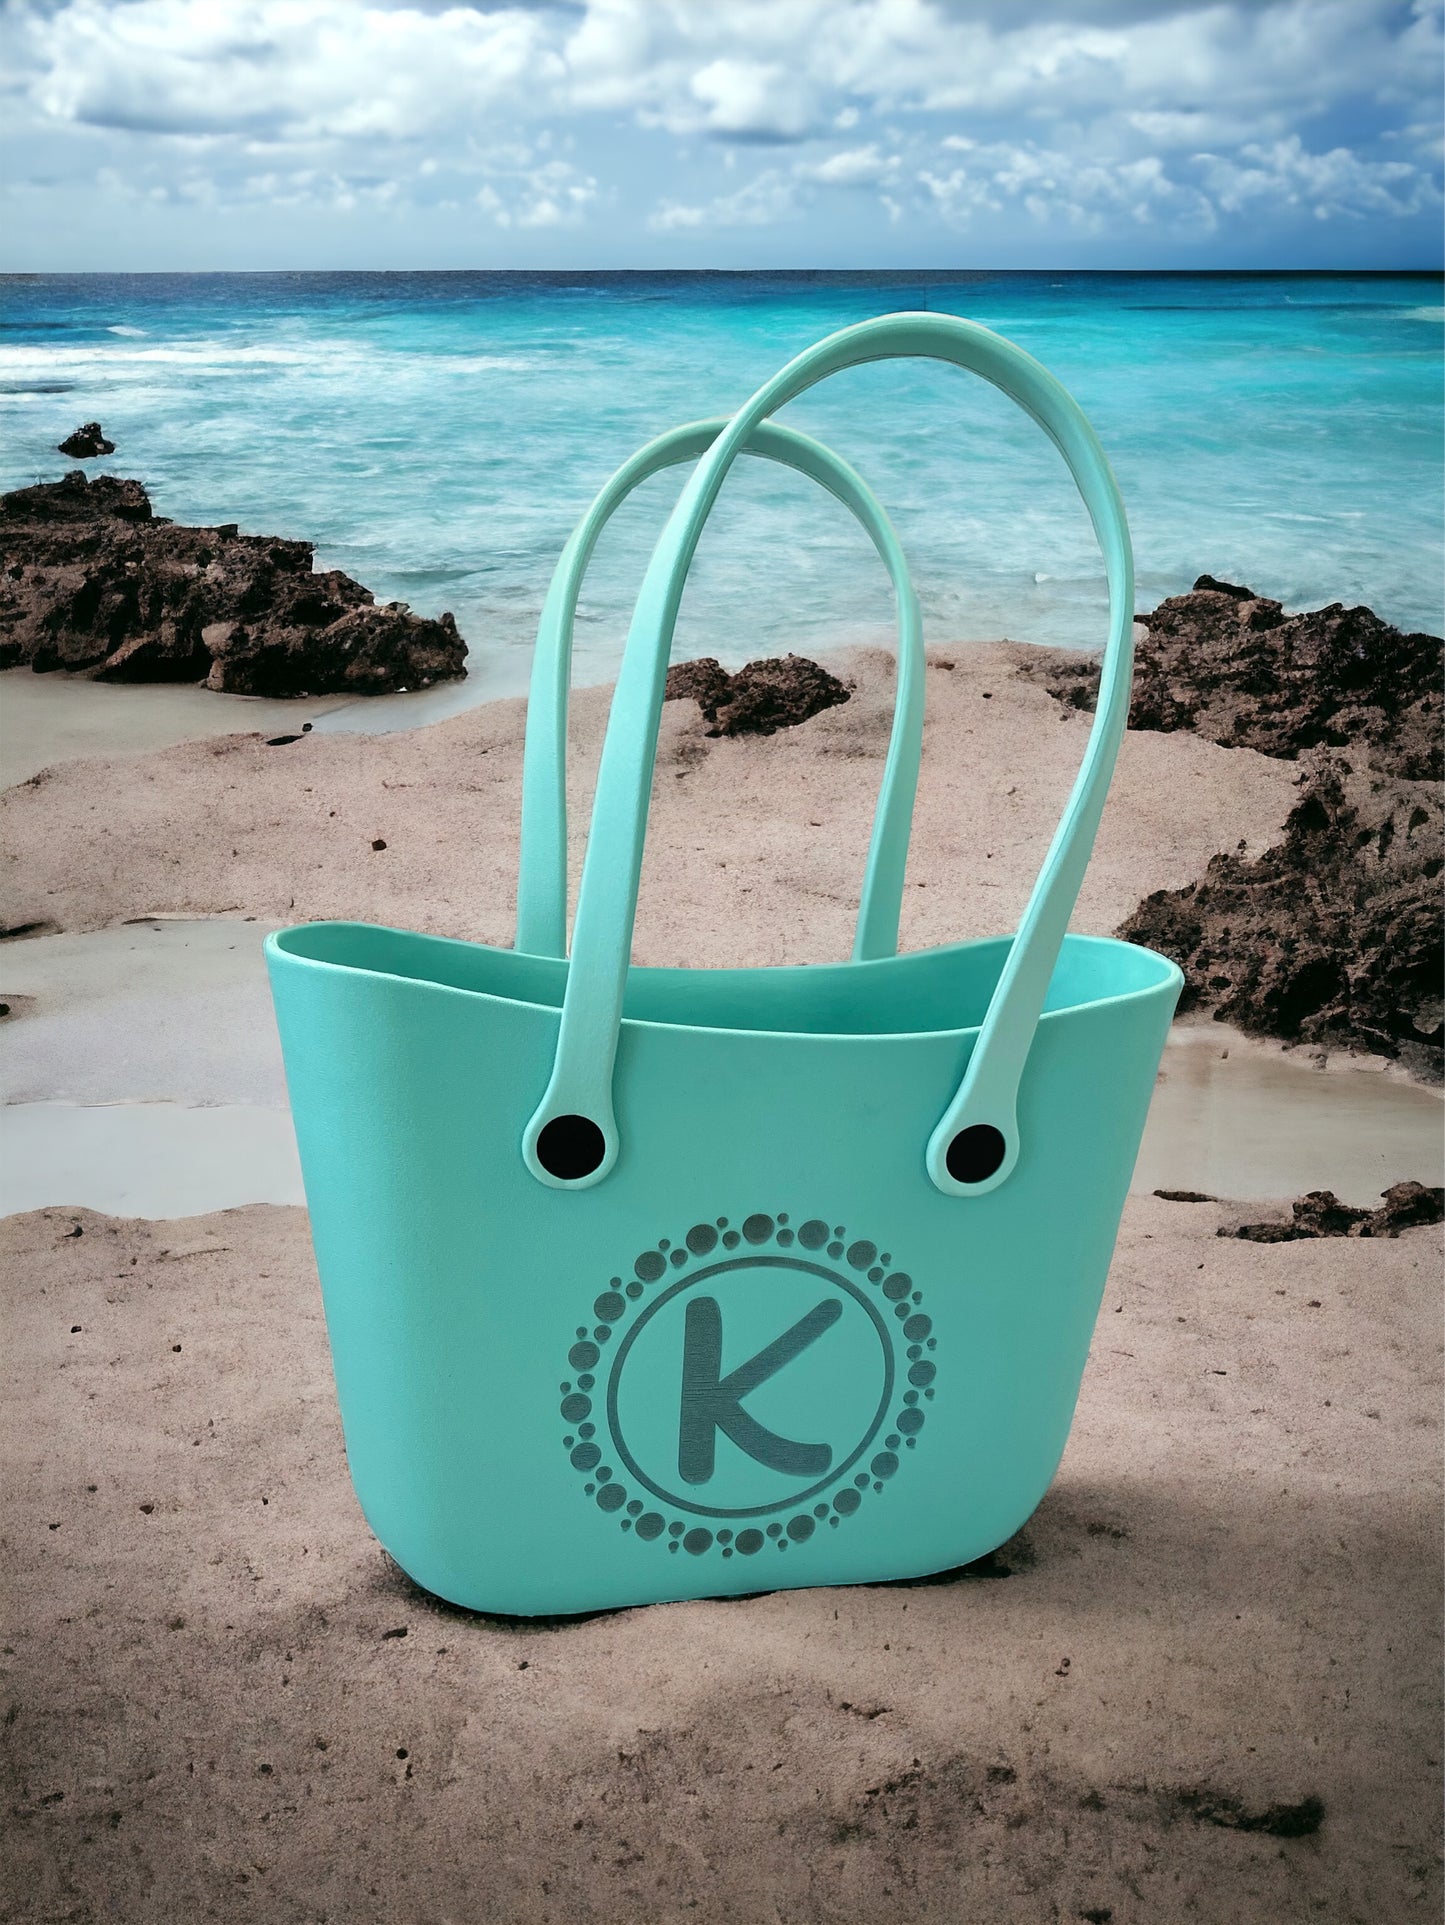 Personalized Monogram Tote Bag | Personalized Graduation Gift | Personalized Beach Bag | Personalized Tote Bag | Waterproof Tote Bag